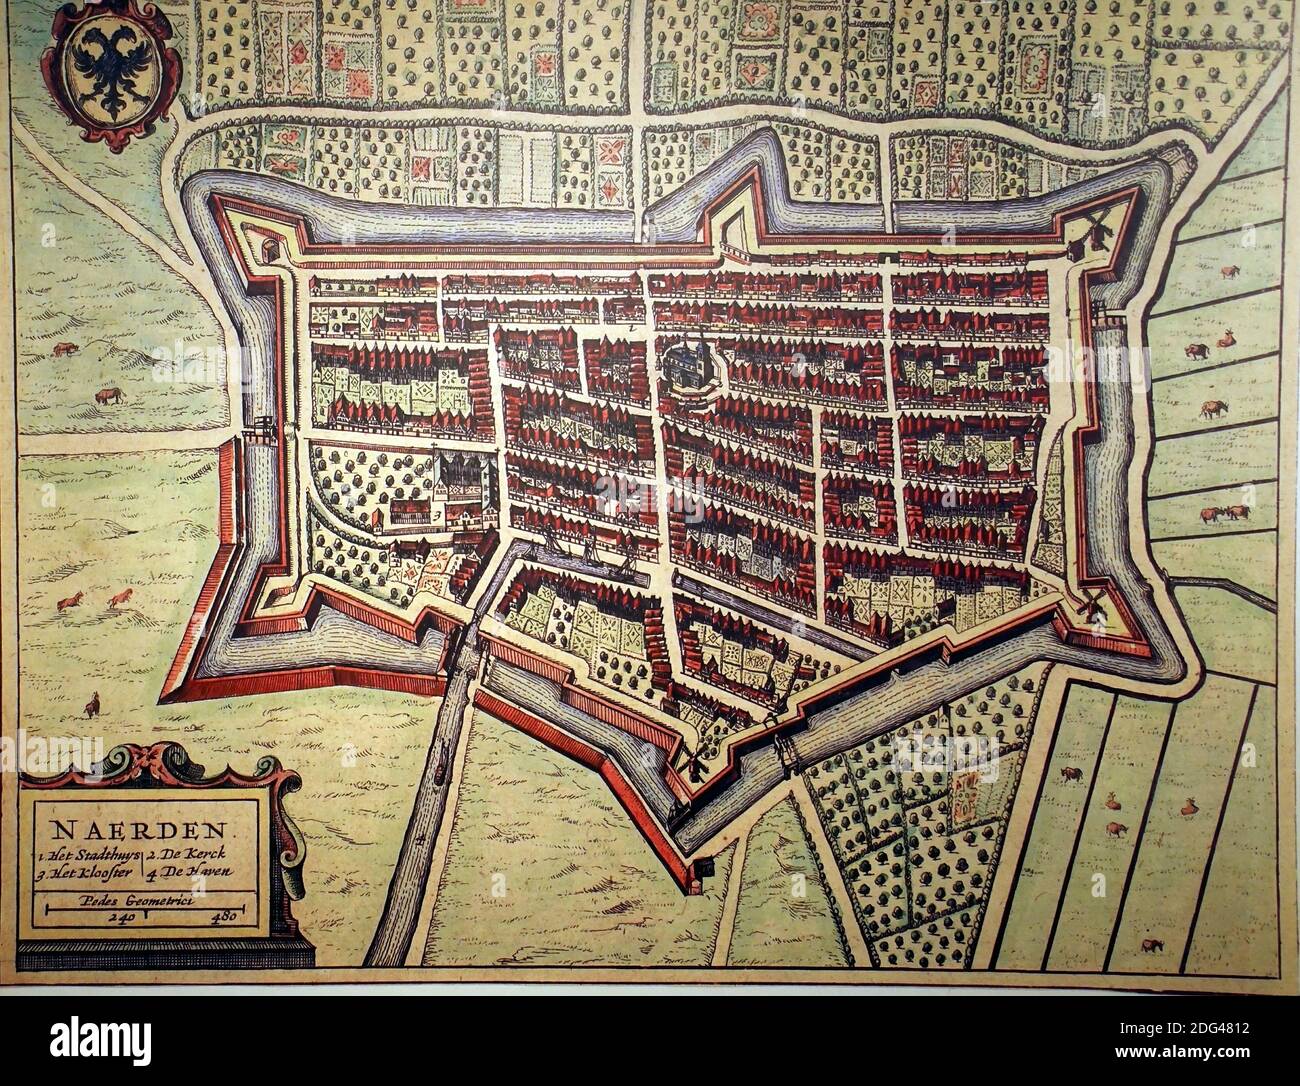 NAARDEN, PAÍSES BAJOS - Dic 13, 2018 - Mapa vintage de la ciudad fortificada de Naarden, países Bajos Foto de stock